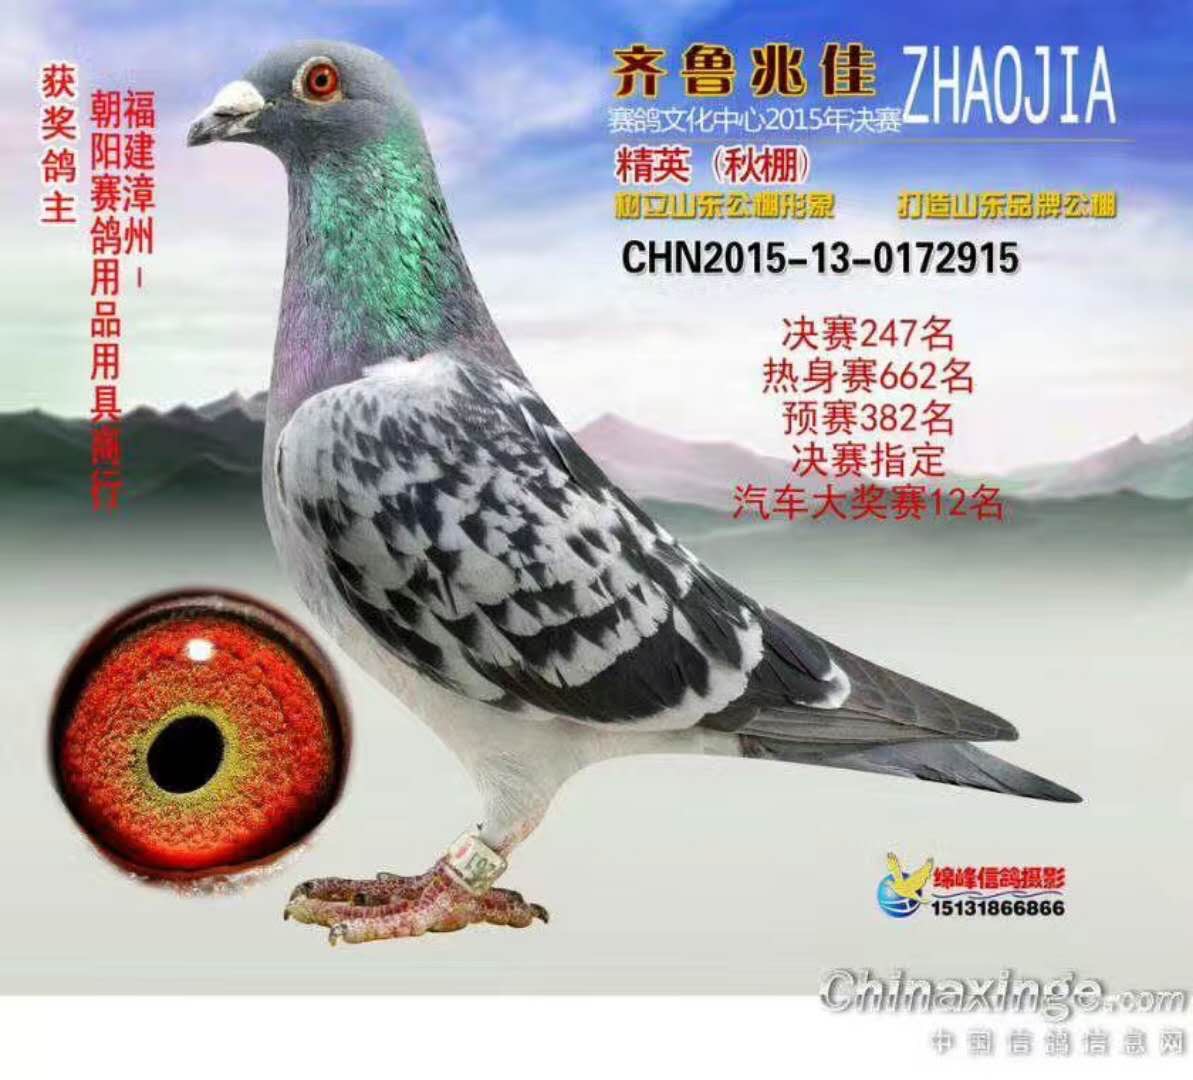 朝阳赛鸽13709329749|名人名鸽精英-漳州市林成龙鸽业